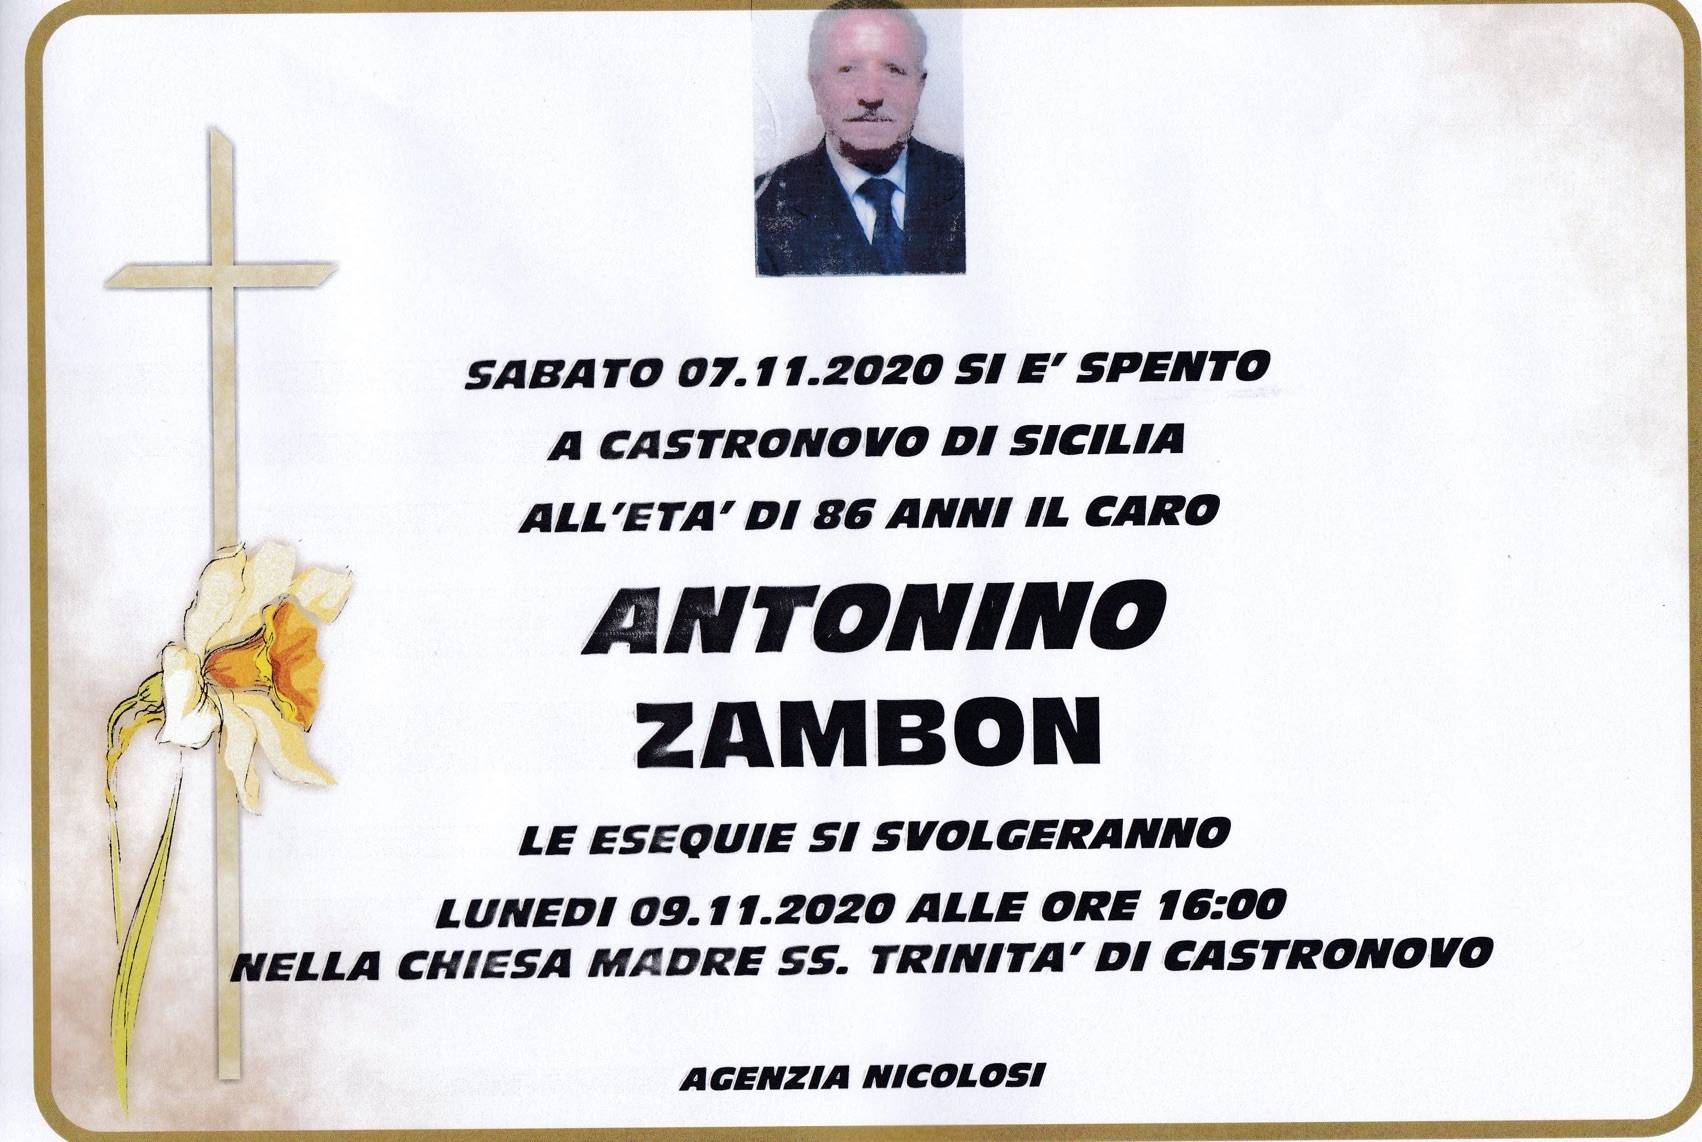 Antonino Zambon